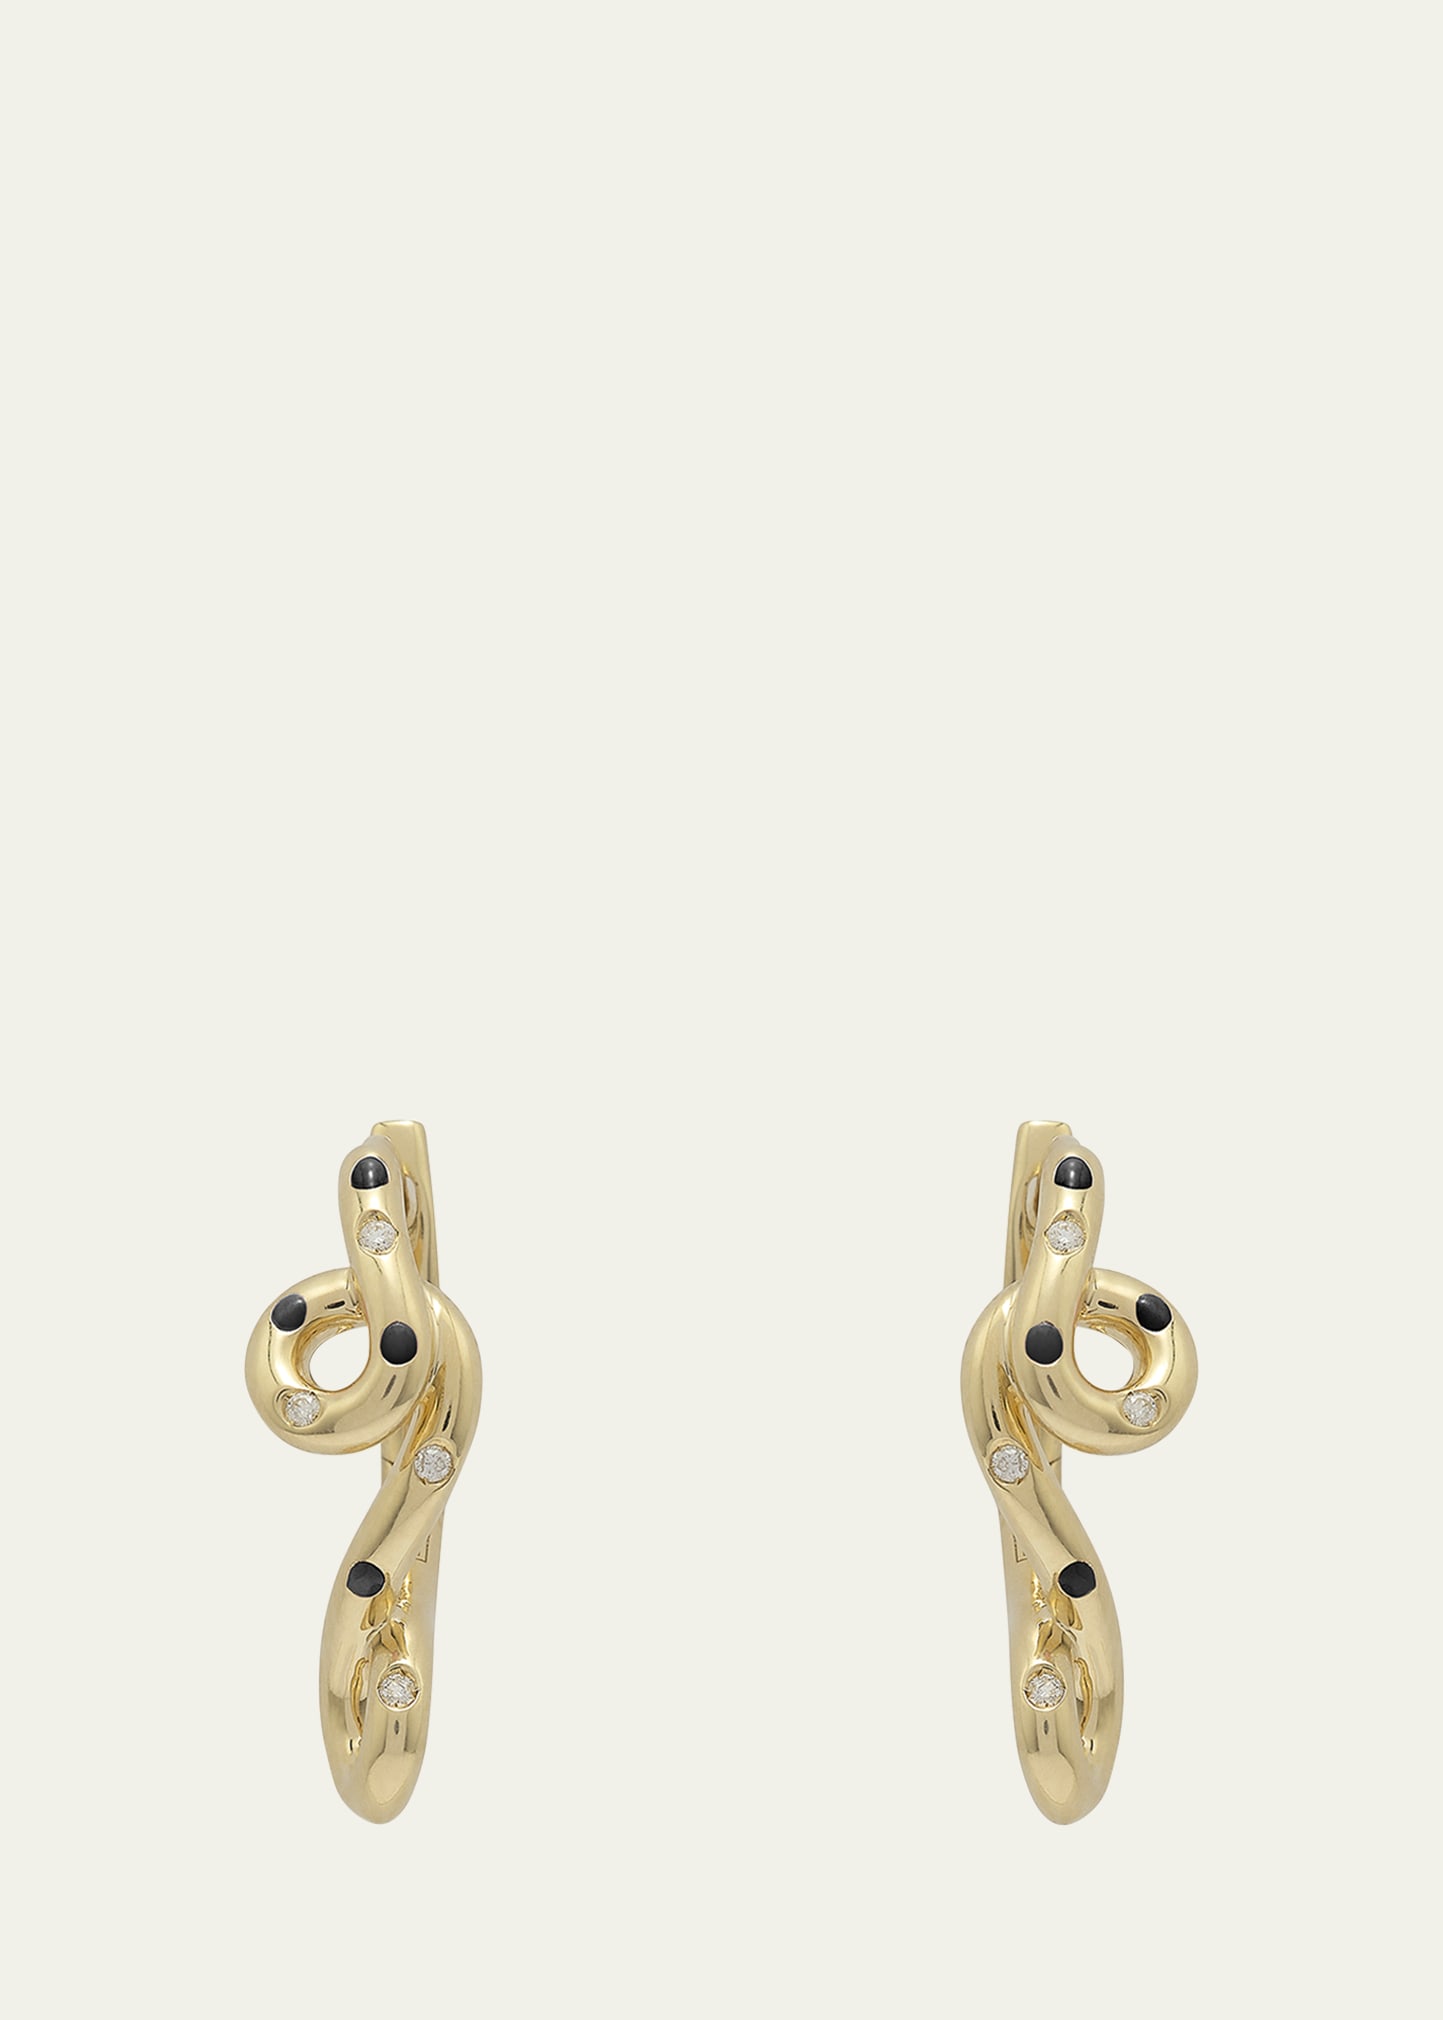 9K Gold Diamond and Black Enamel Polka Dot Earrings